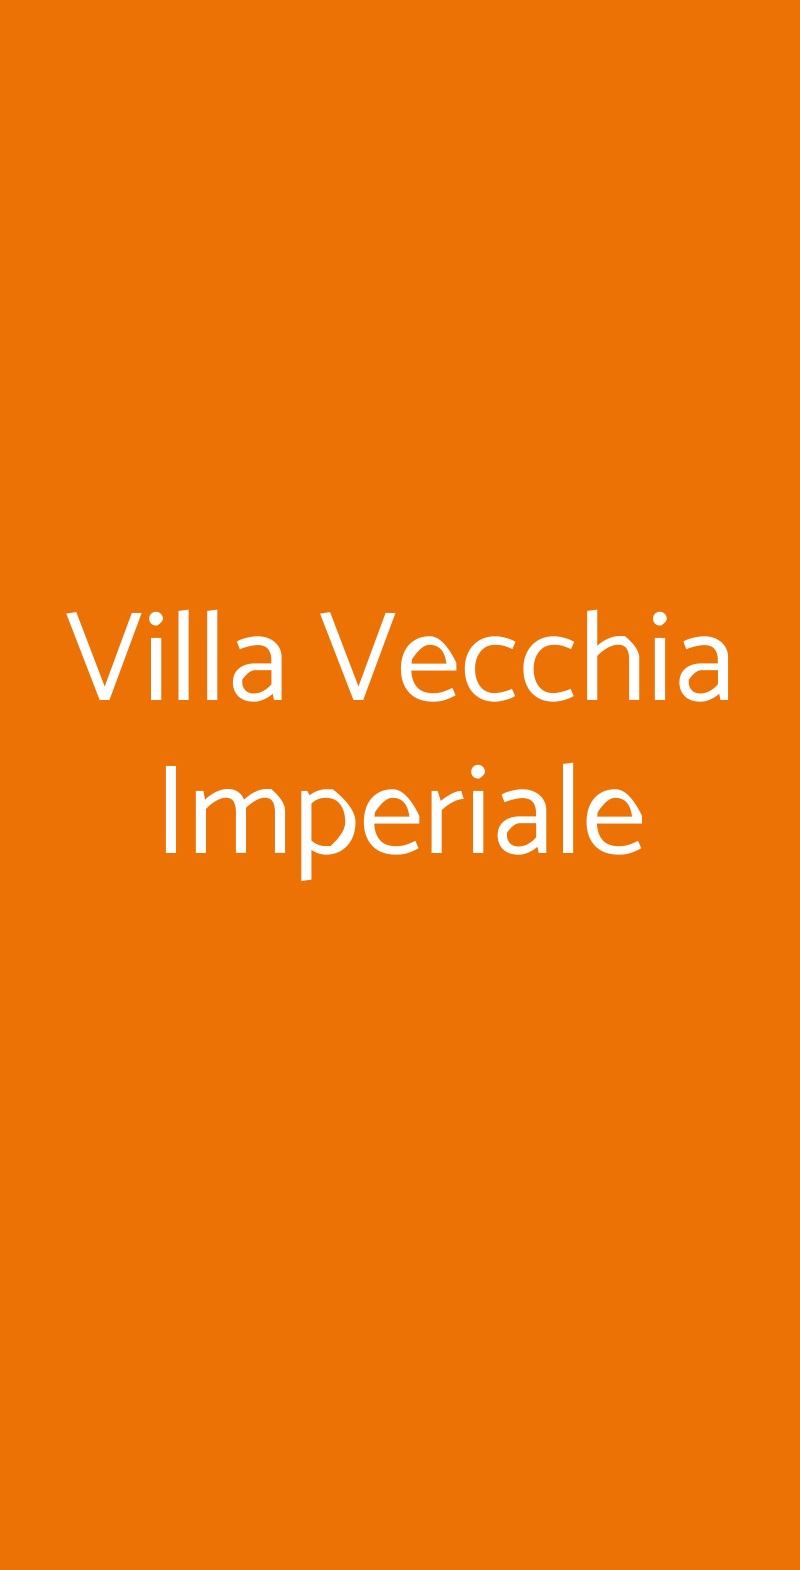 Villa Vecchia Imperiale Vaglia menù 1 pagina